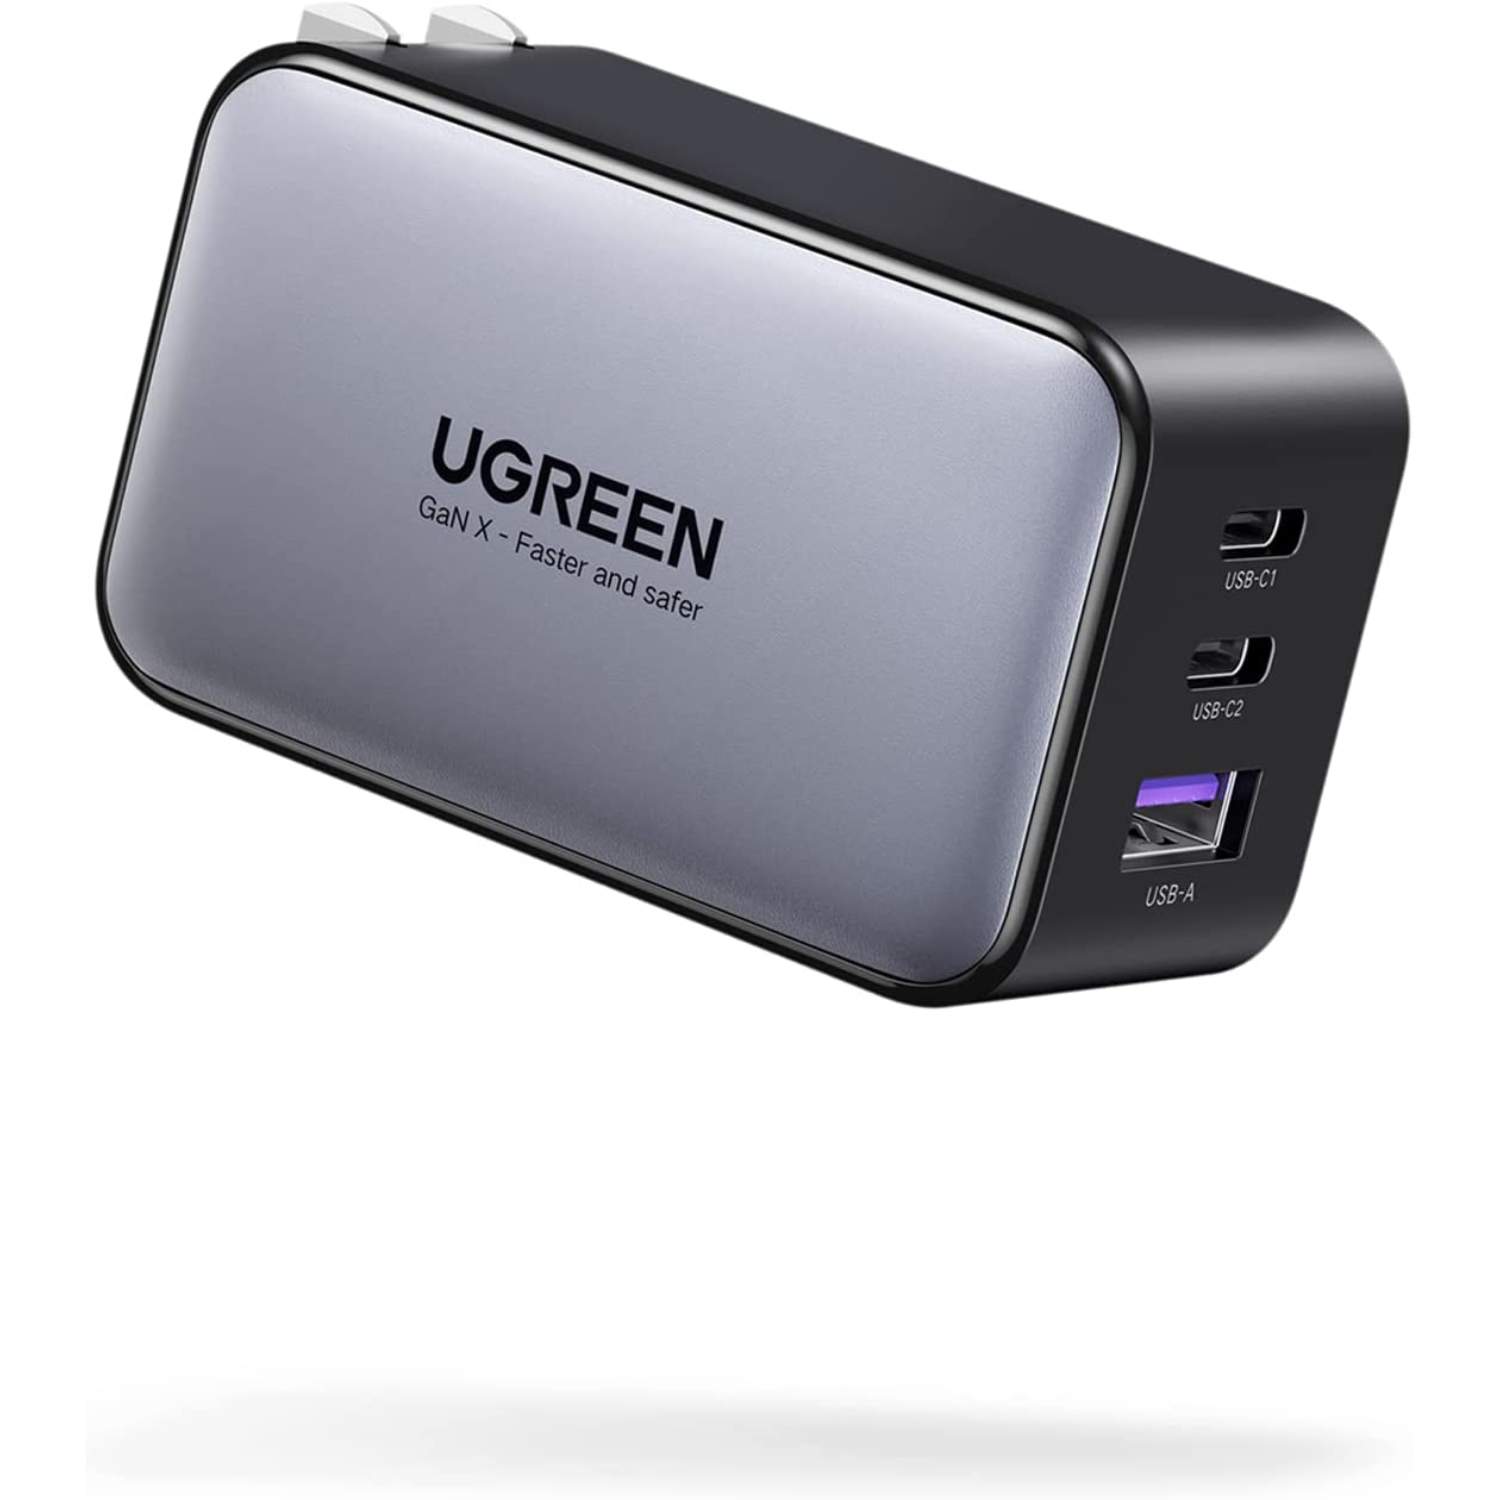 UGREEN 30W Mini Cargador USB C, GAN PD Cargador Rápido Portatil Compat